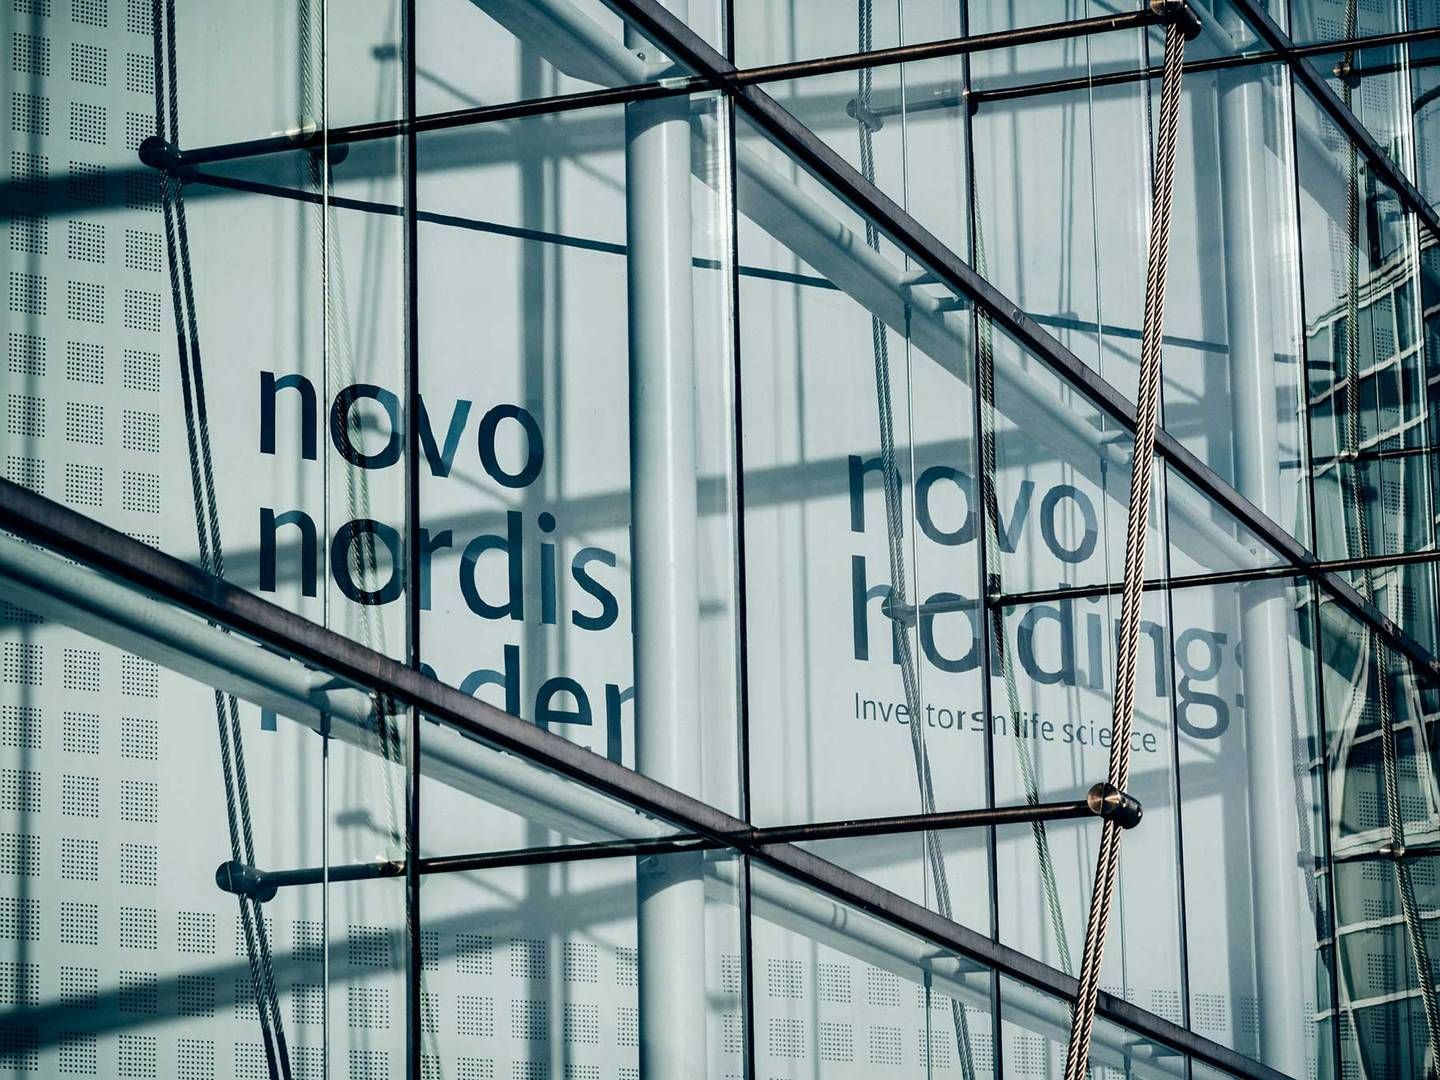 De øgede ambitioner skyldes især Novo Nordisks store succes med midlerne Ozempic og Wegovy, der henholdsvis bruges til at behandle diabetes og vægttab. | Foto: Novo Holdings / Pr